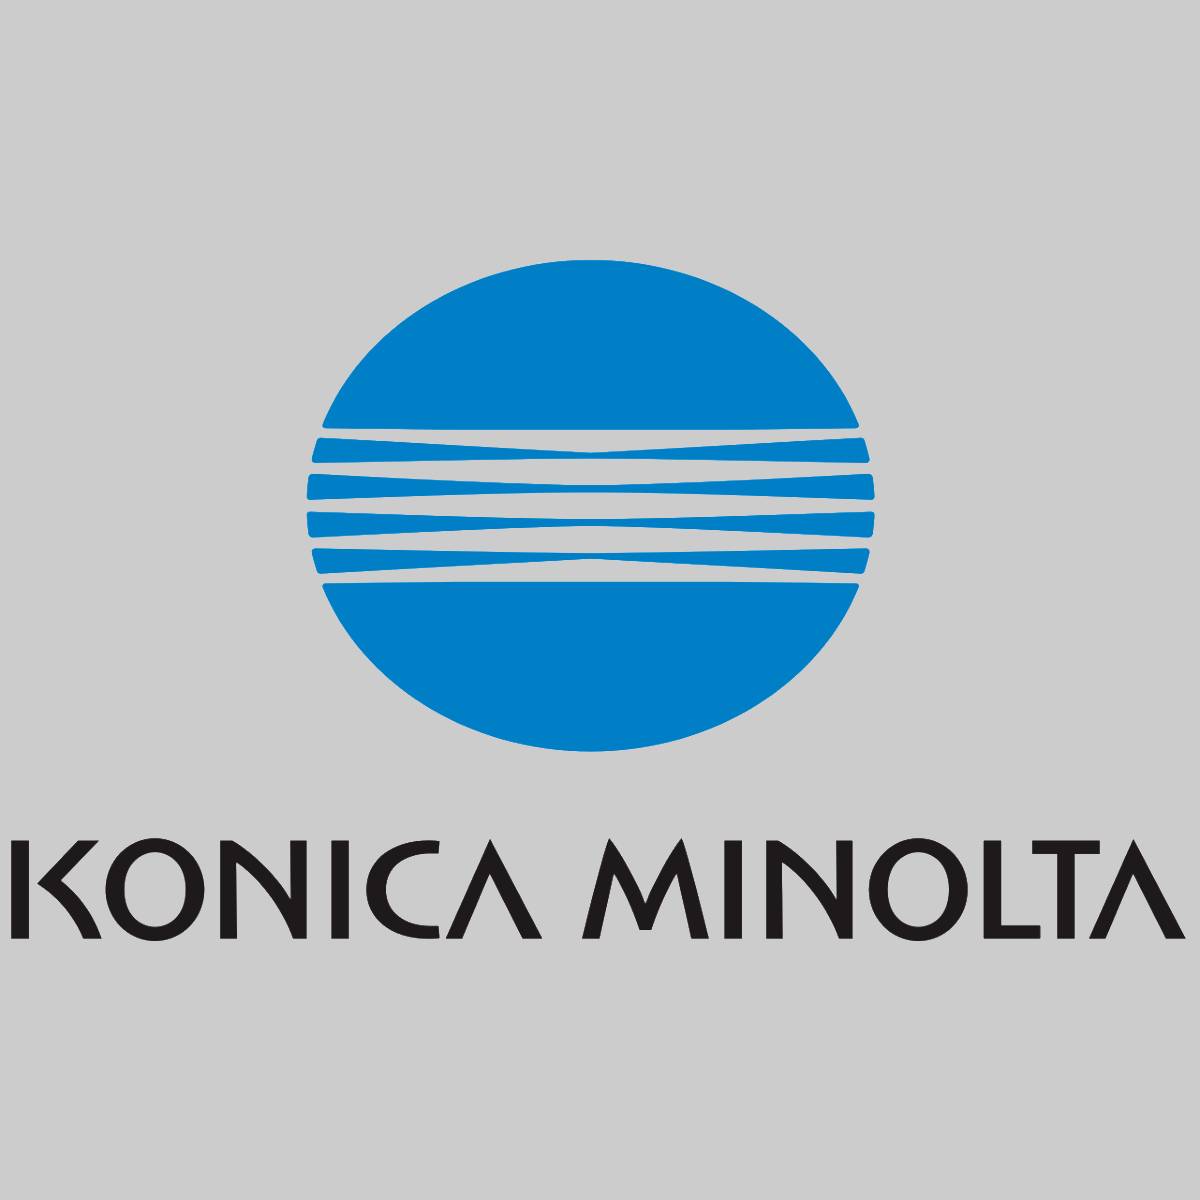 "Toner Magenta d'origine Konica Minolta TN212M A00W272 pour Magicolor 2550 CK